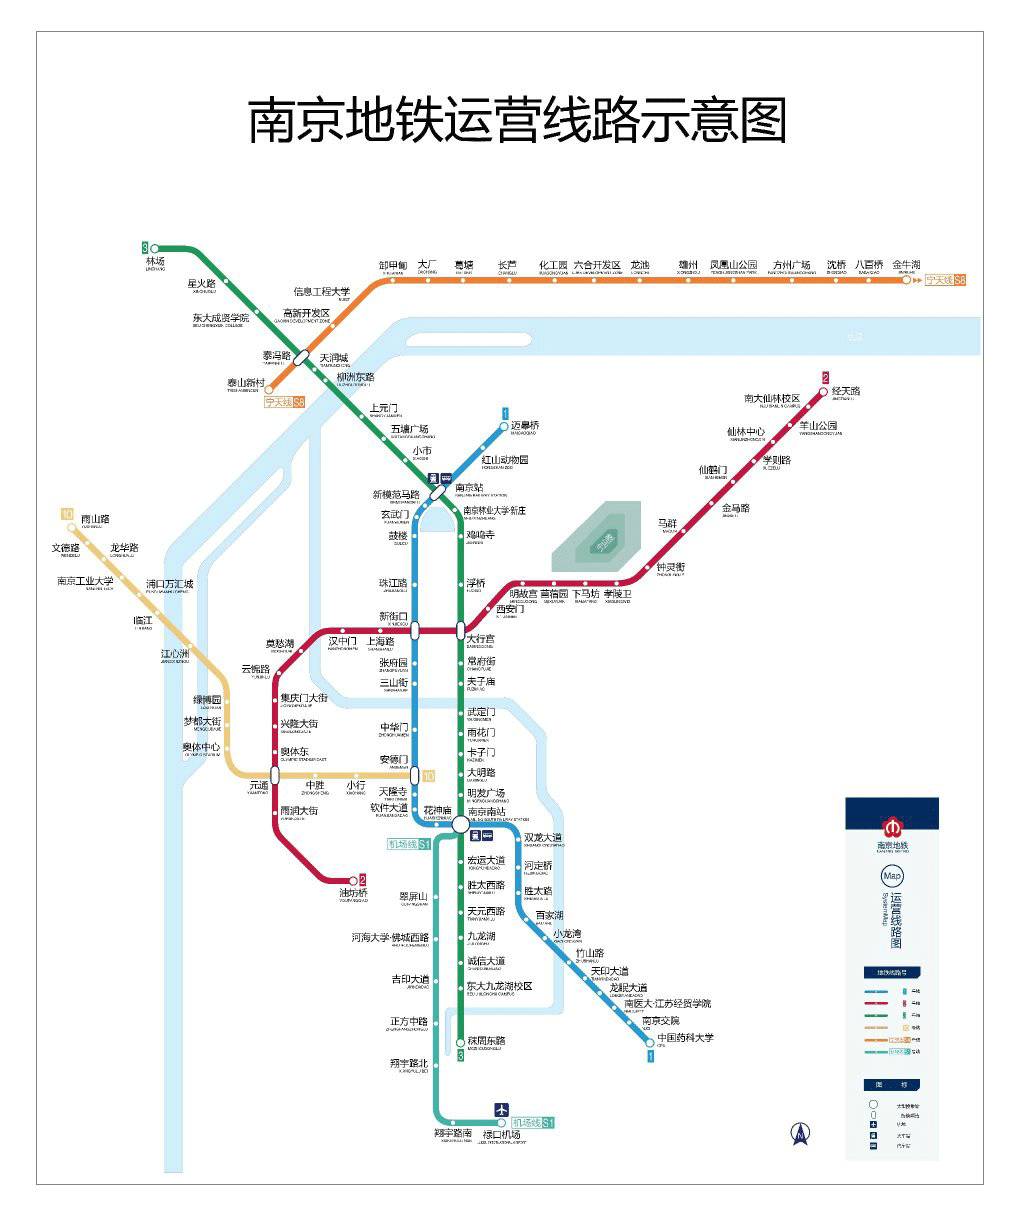 南京地铁实用信息最新大汇总,只要你坐地铁